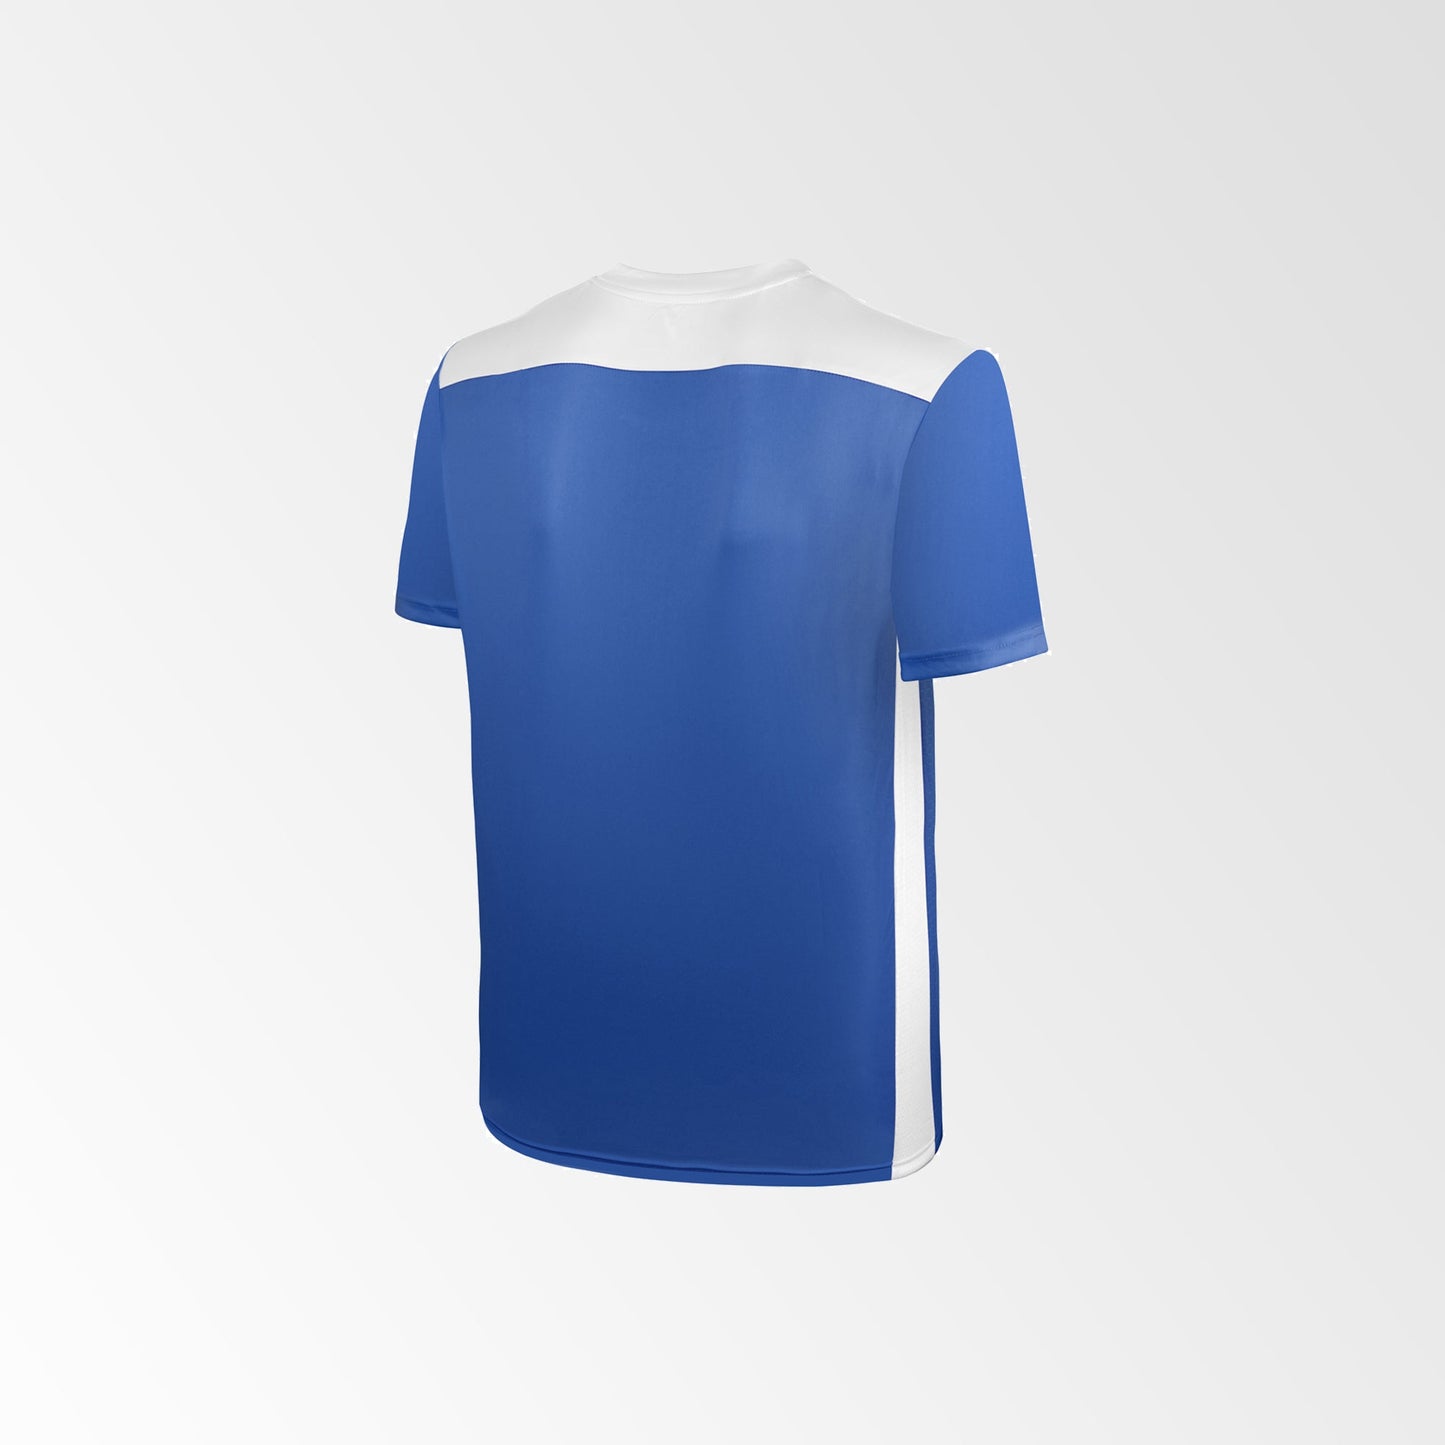 Camiseta de Fútbol y Short Modelo Betis Azul-Rey Blanco (niños - juveniles)